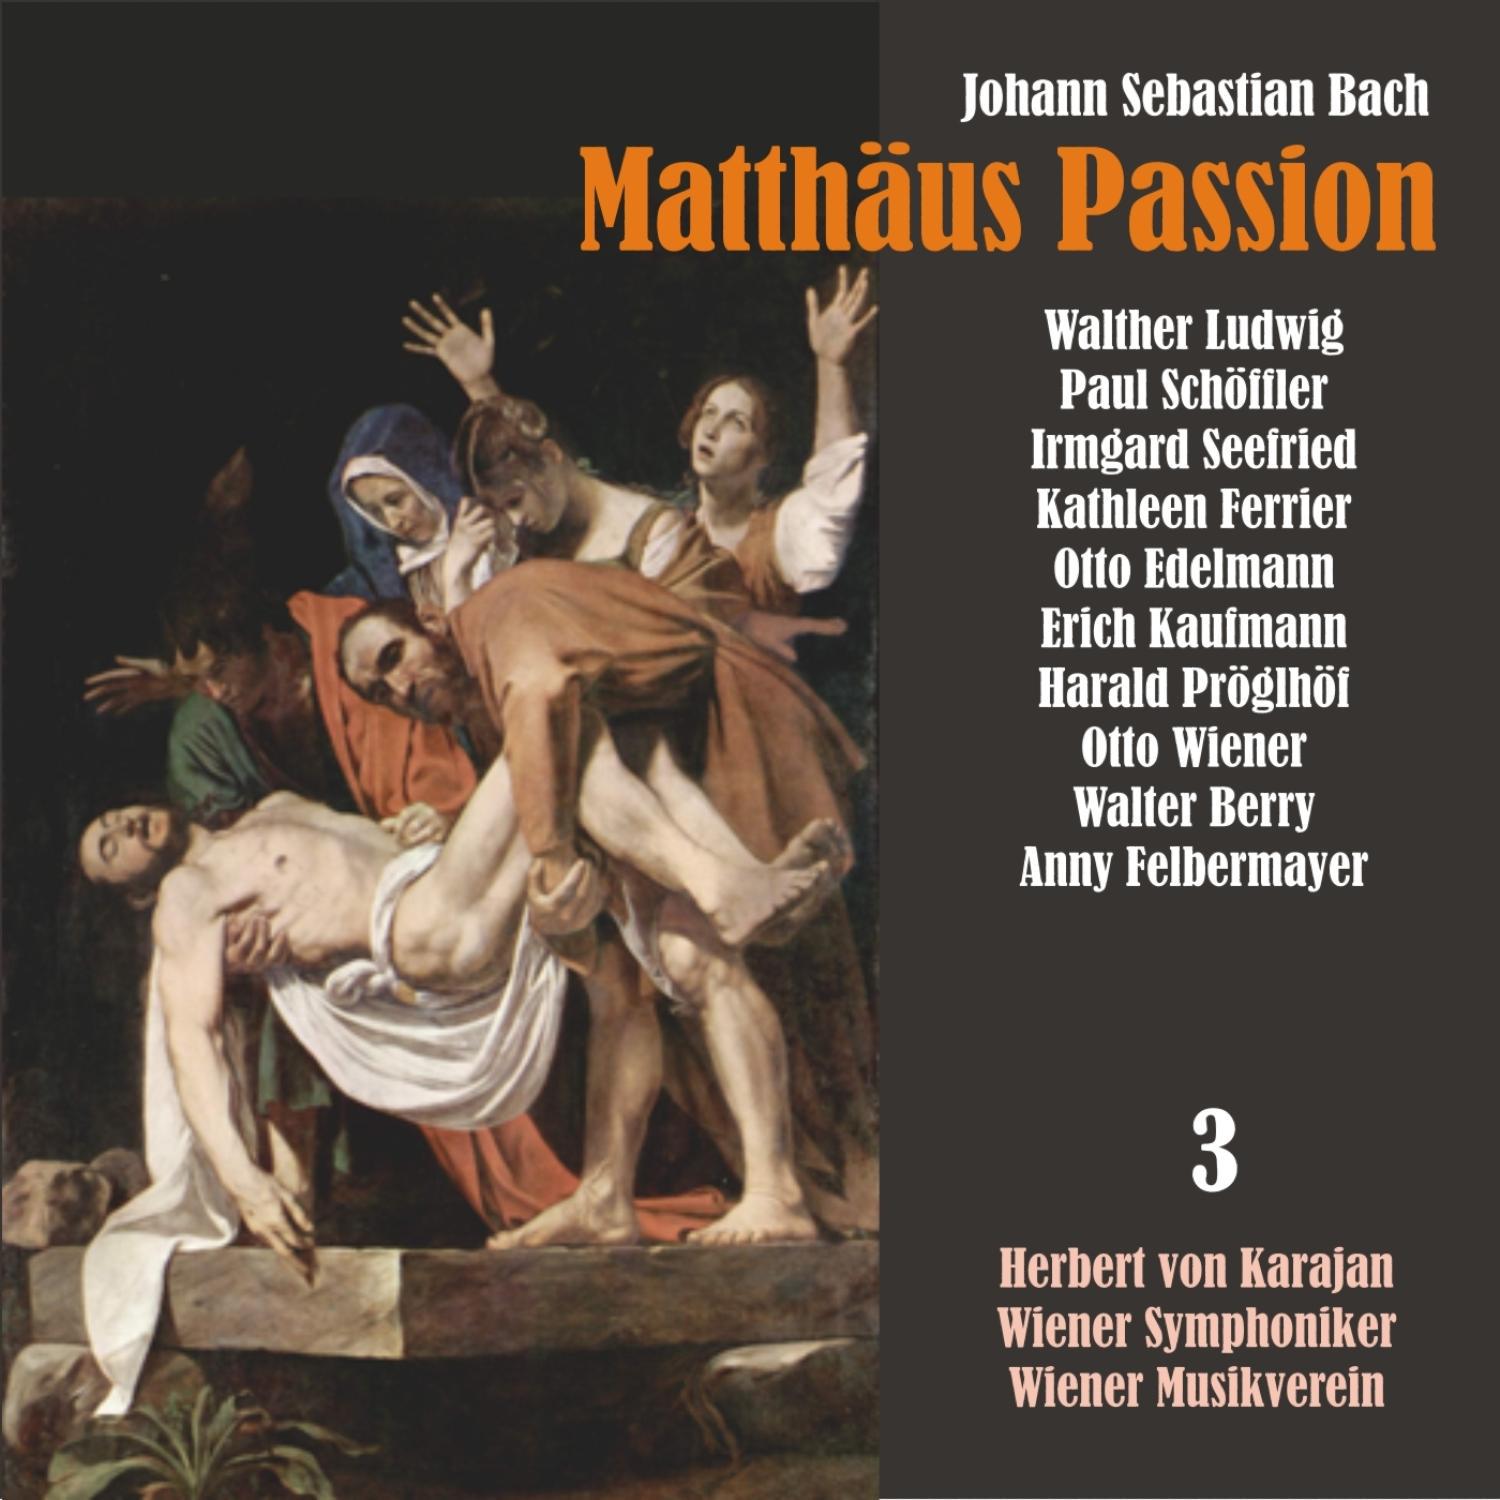 Matth us Passion, BWV 244: " Wir setzen uns mit Tranen nieder"